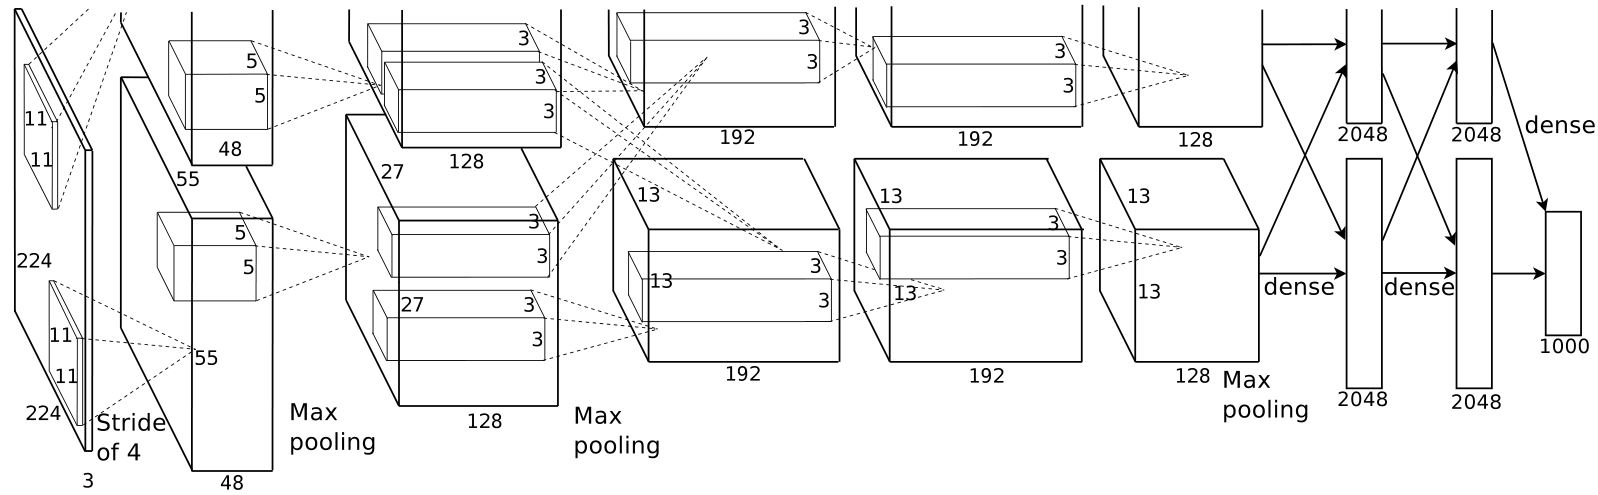 Figure B.5. AlexNet architecture, originally published in Krizhevsky et al. [6]